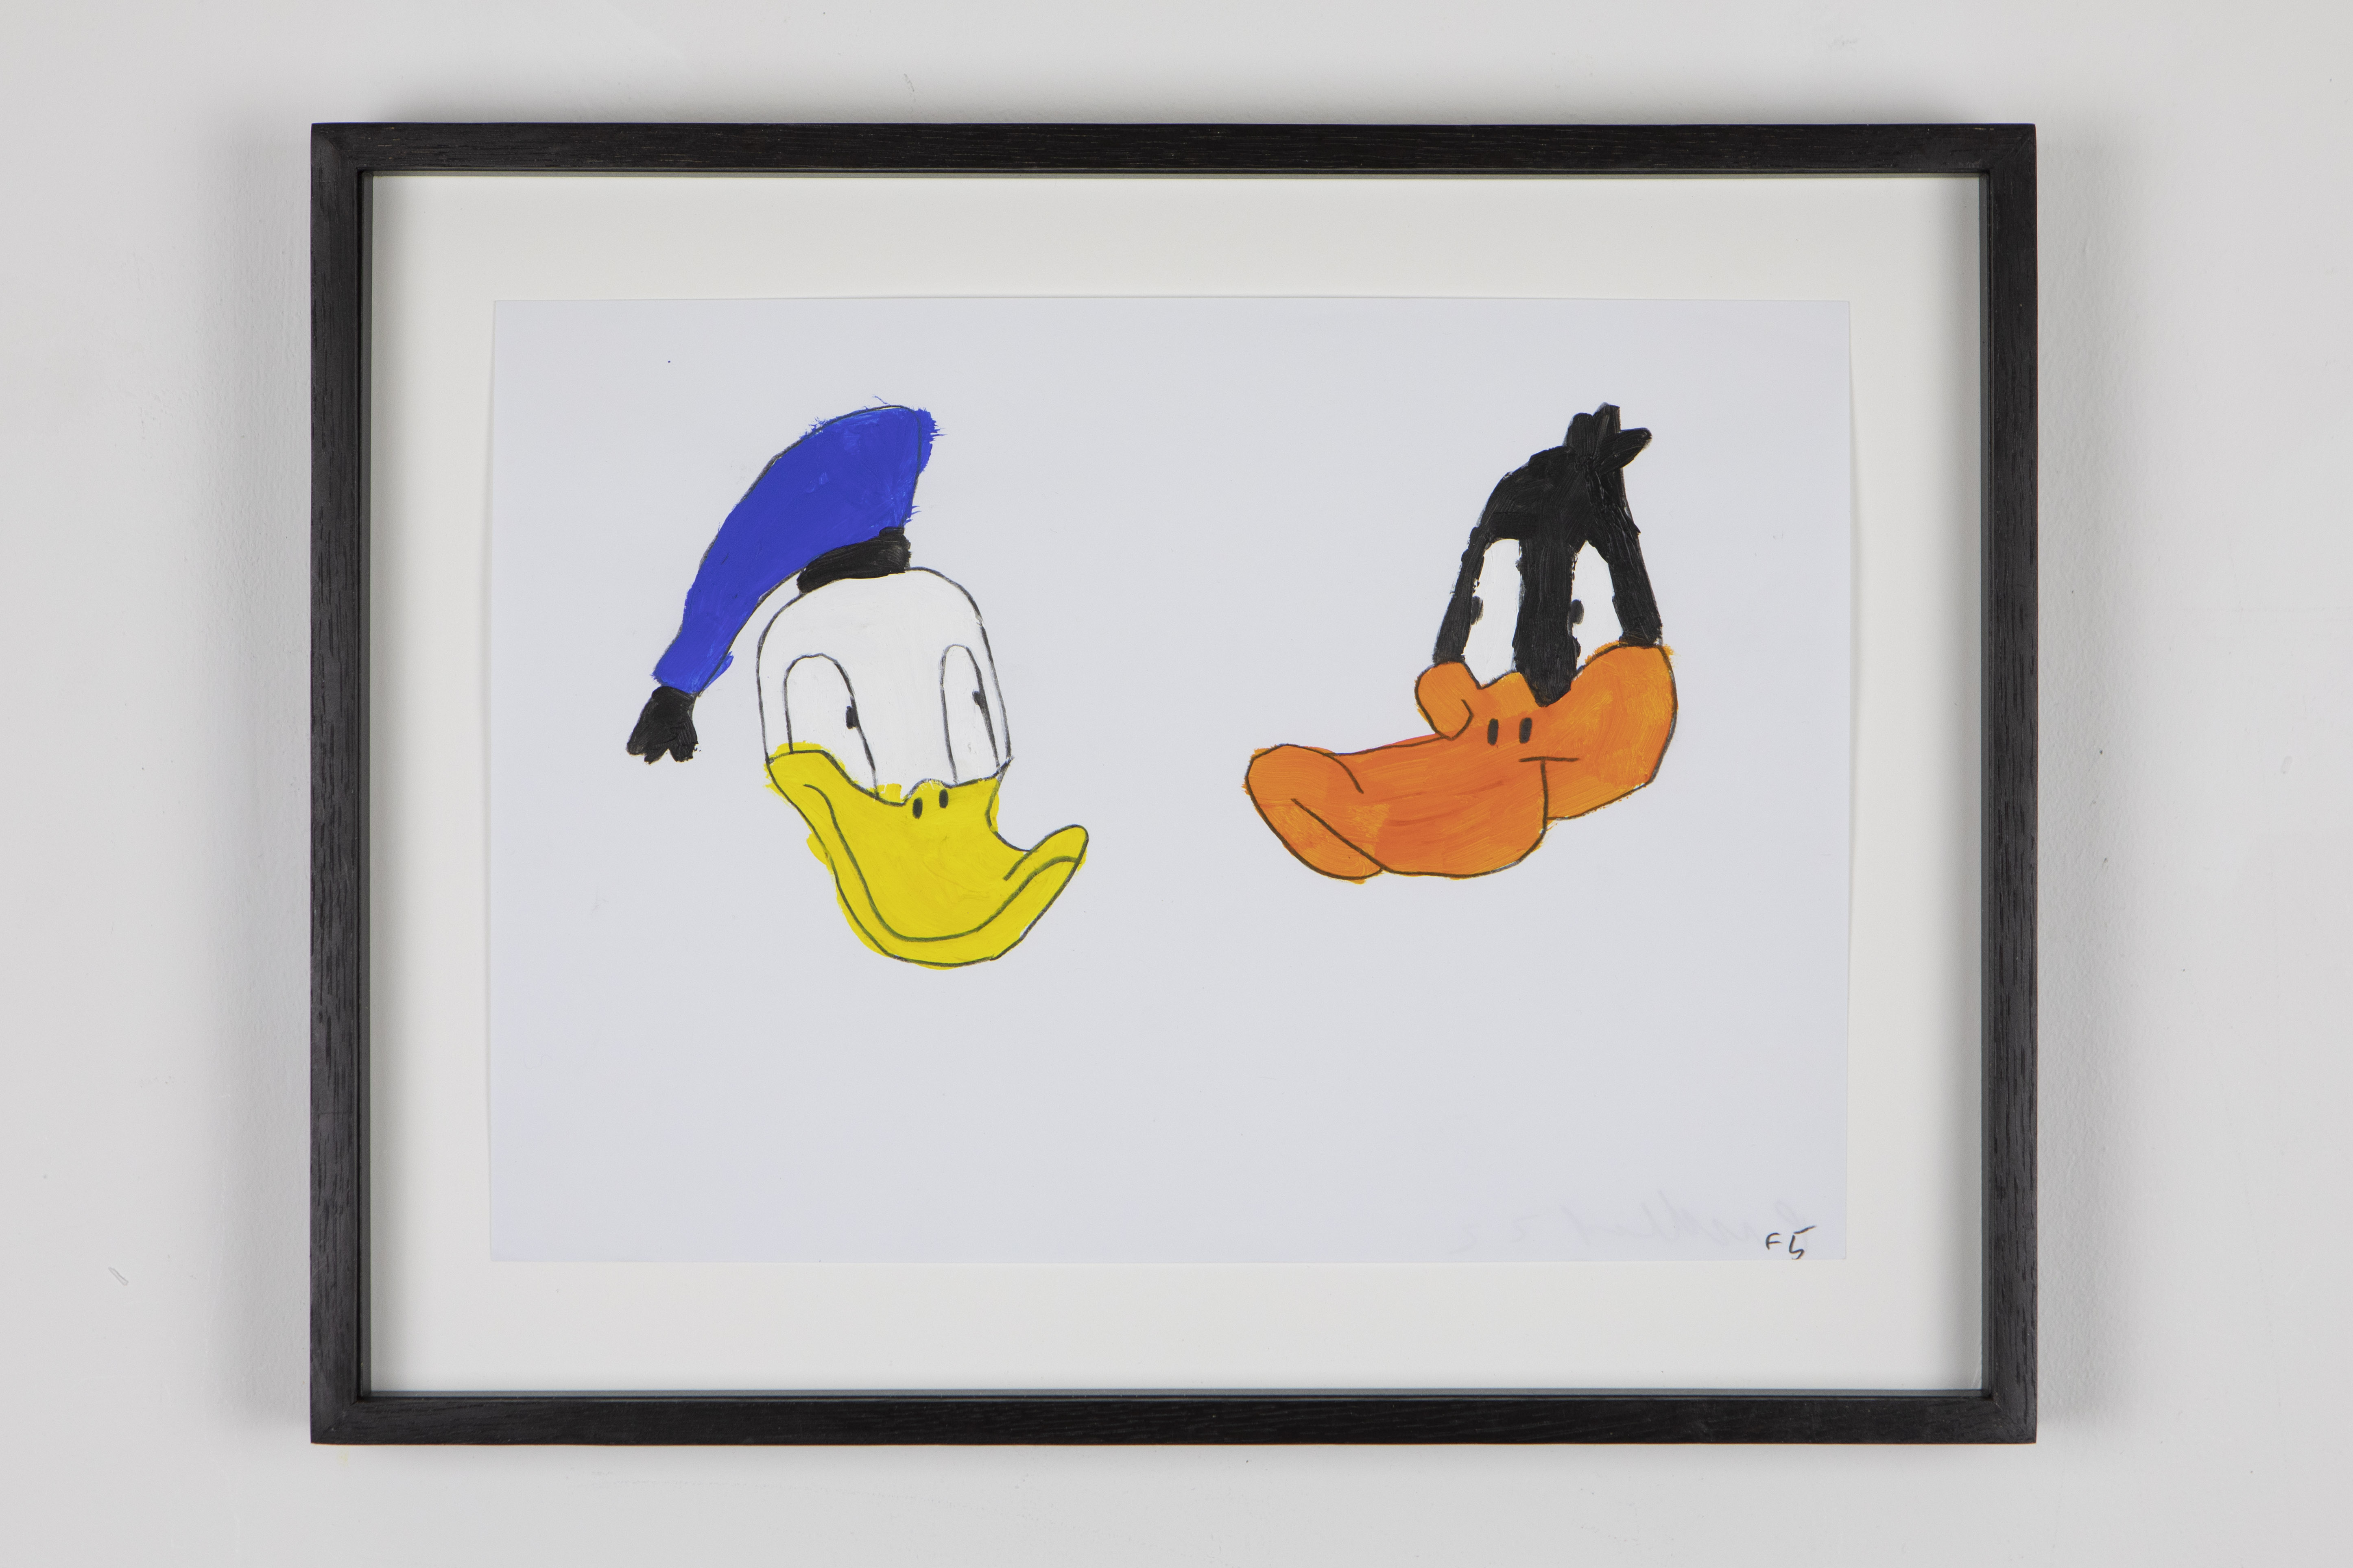 Peter Millard, Untitled (Donald Daffy F6), 2021